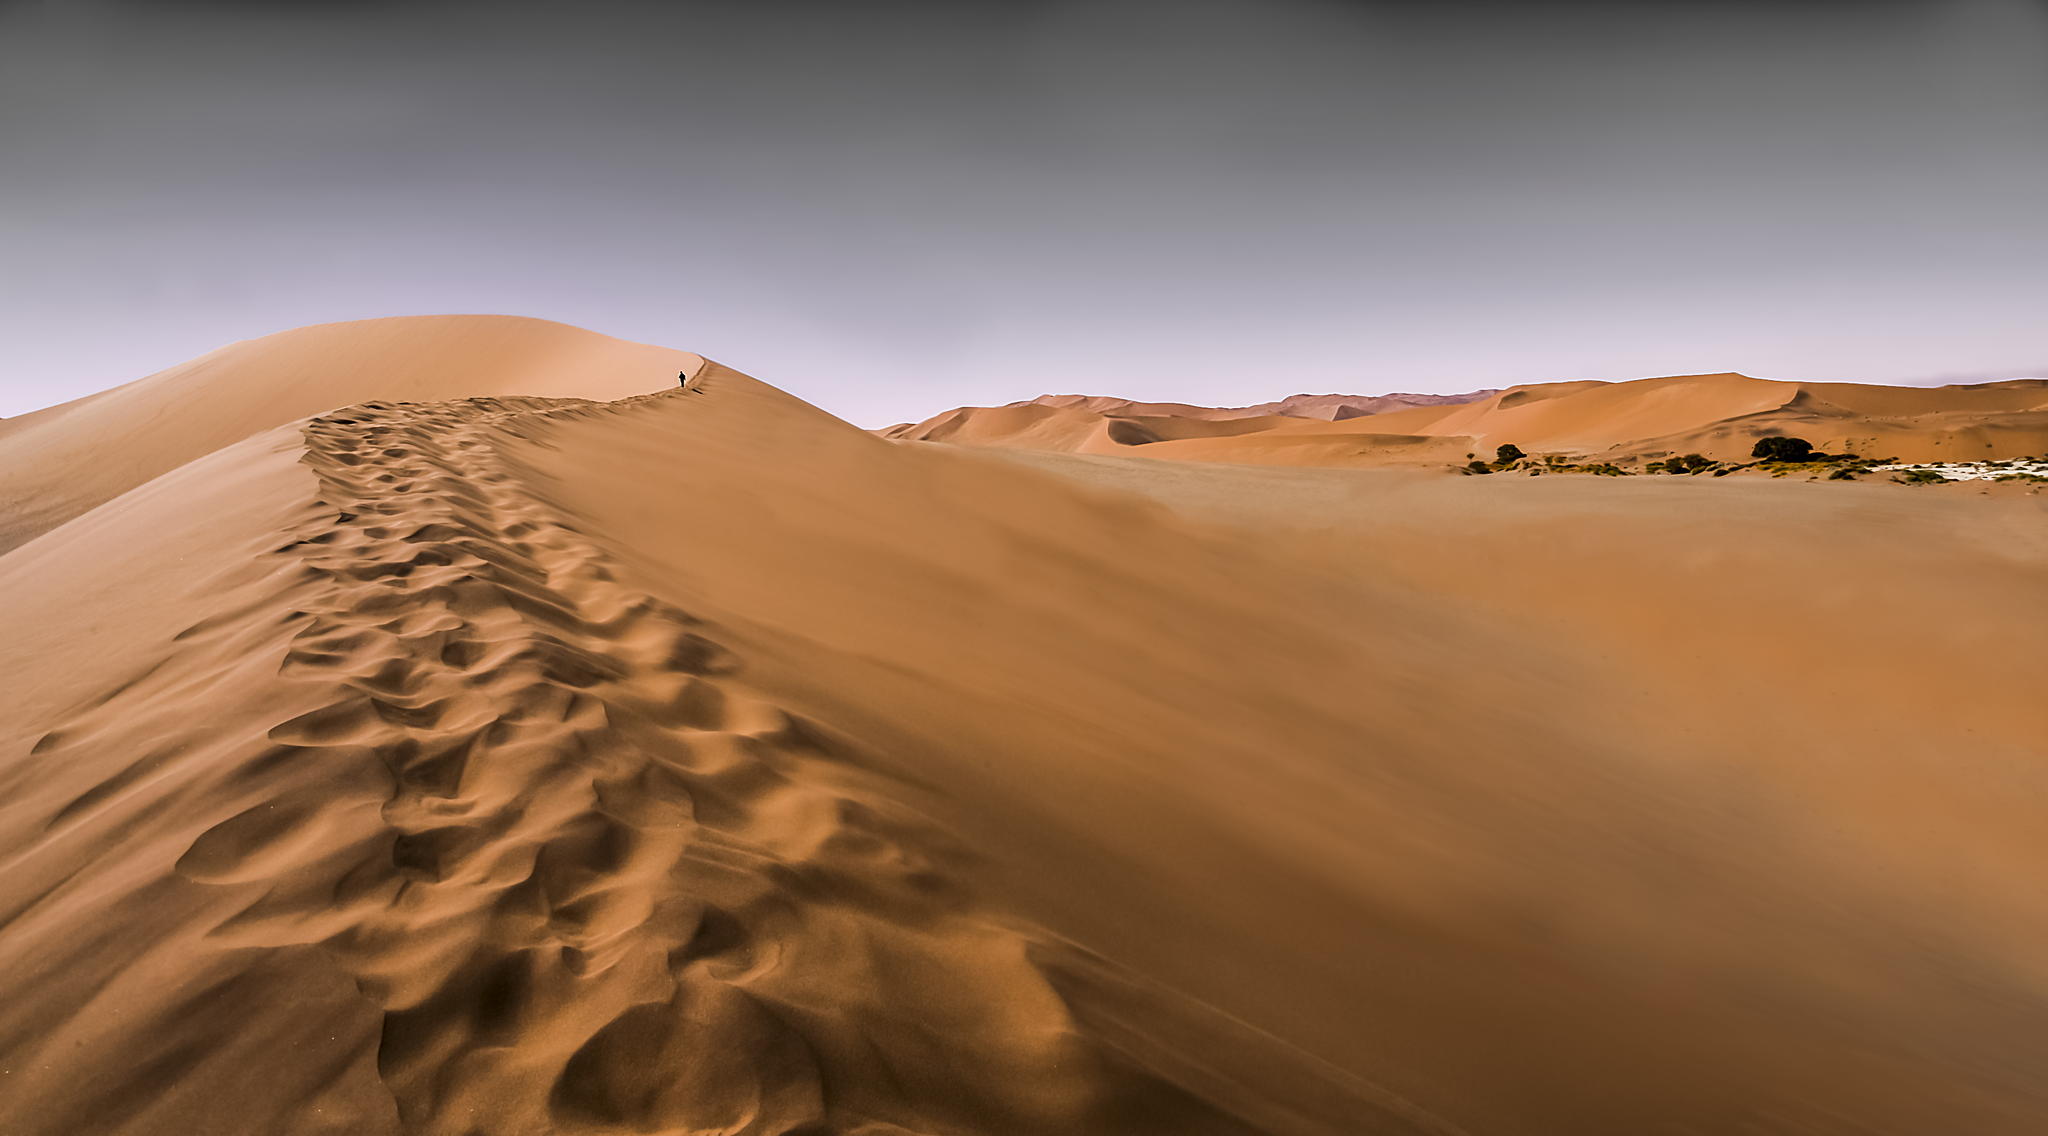 Résultat de recherche d'images pour "desert"